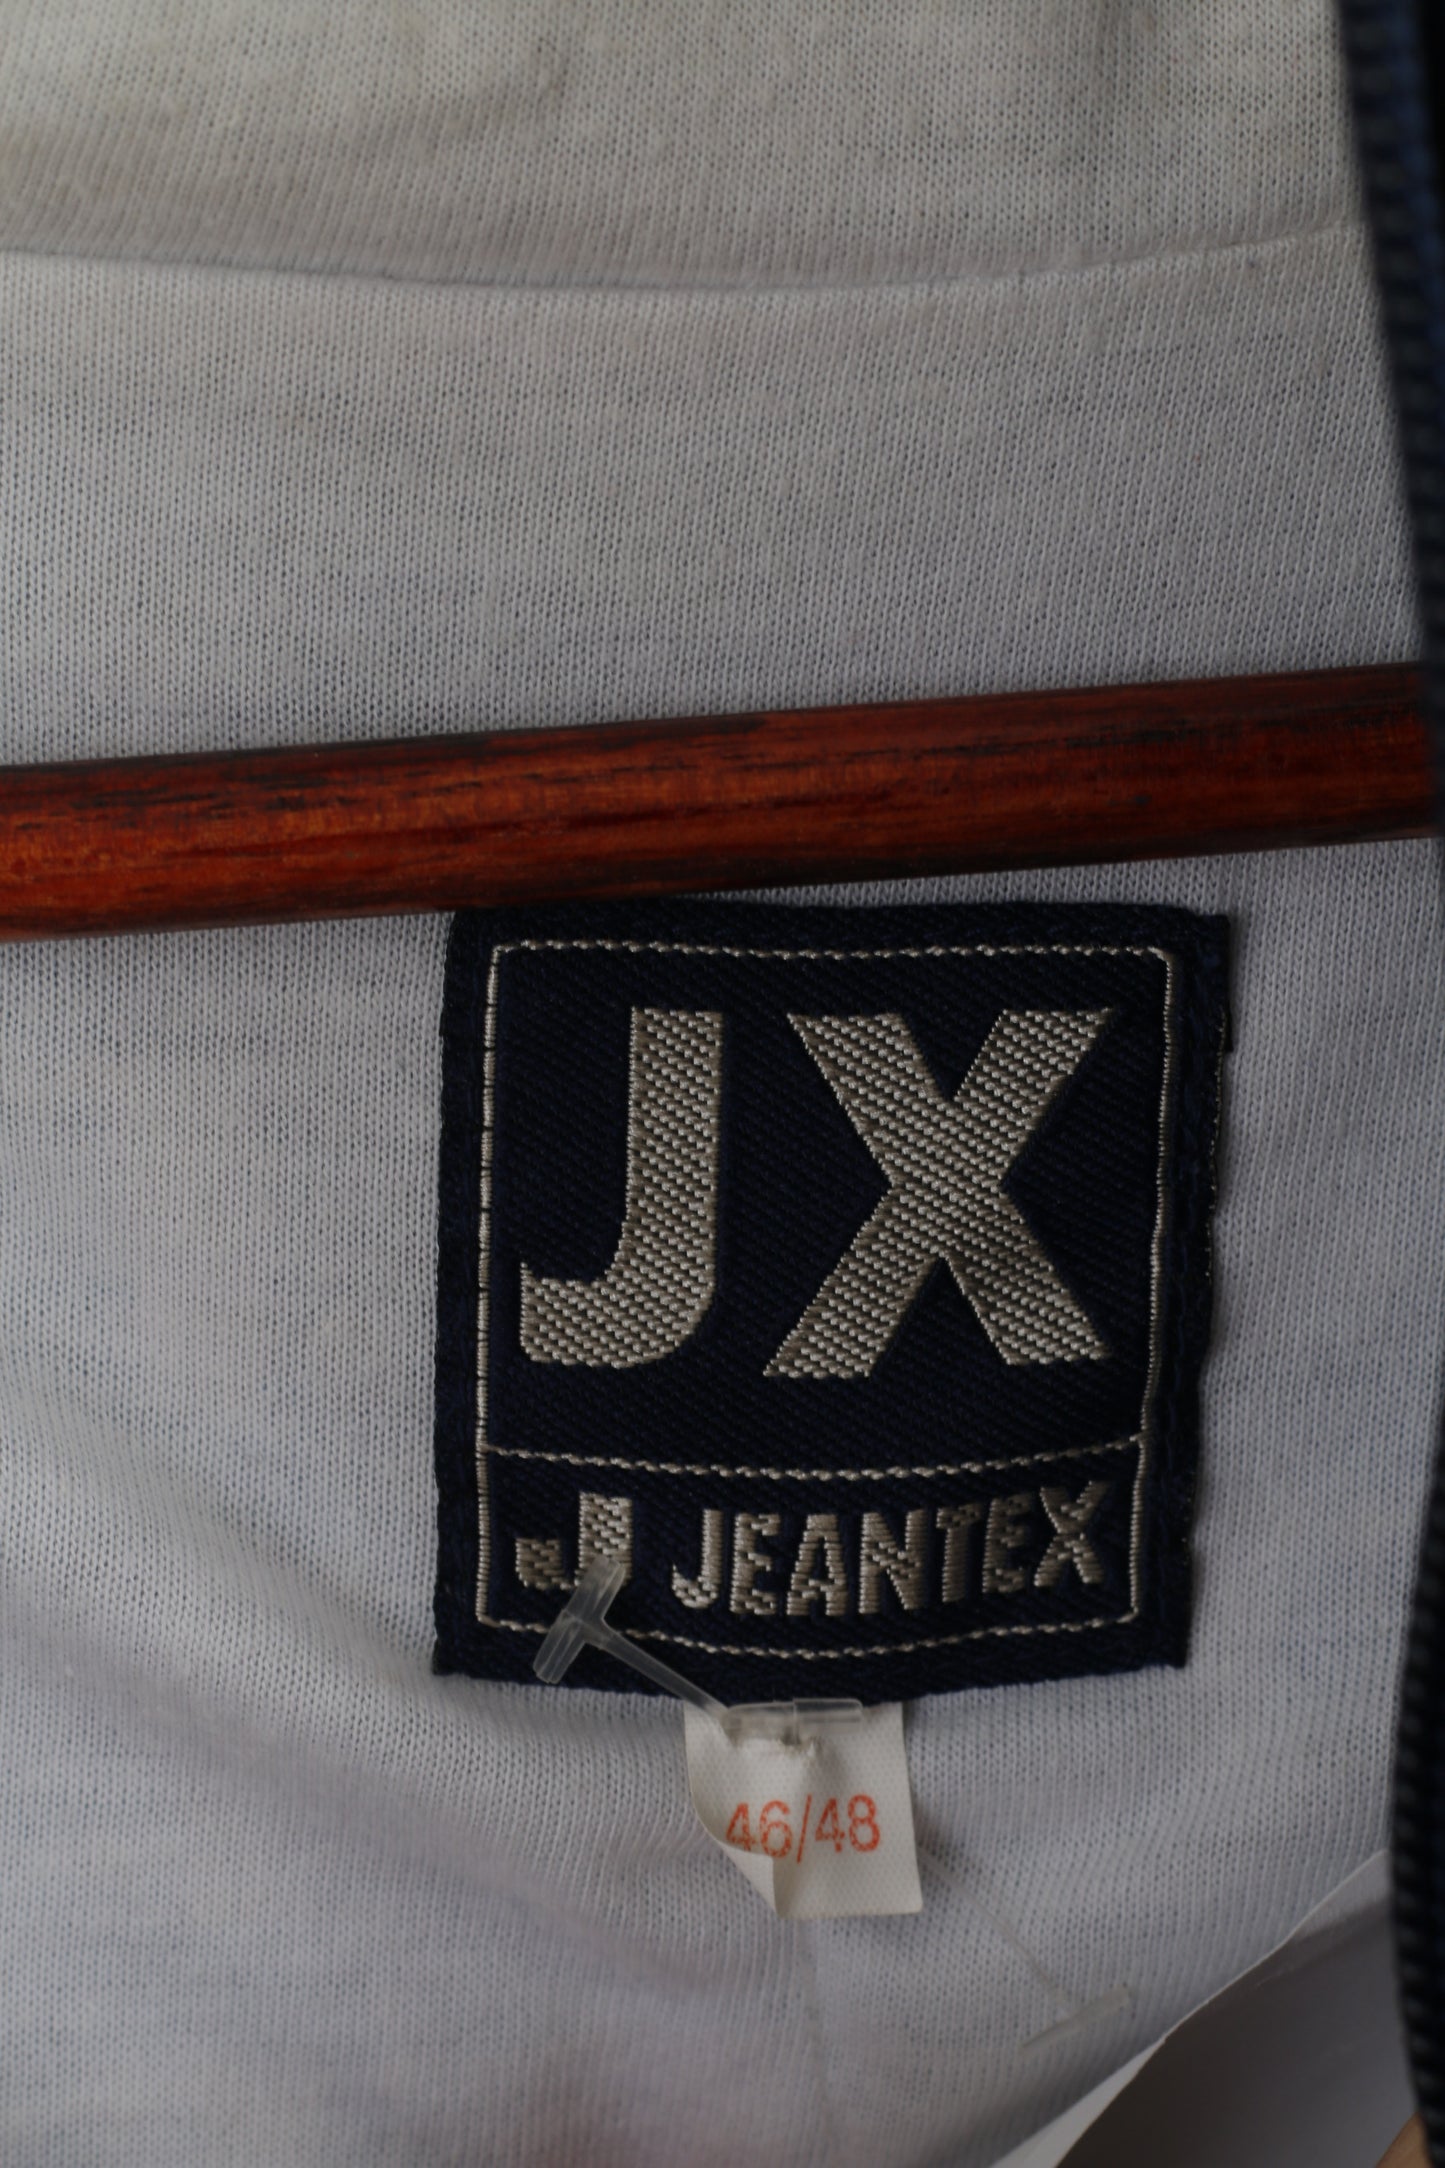 Jeantex Homme XL 46/48 Veste Bleu À Capuche Nylon Imperméable Festival Zip Up Top